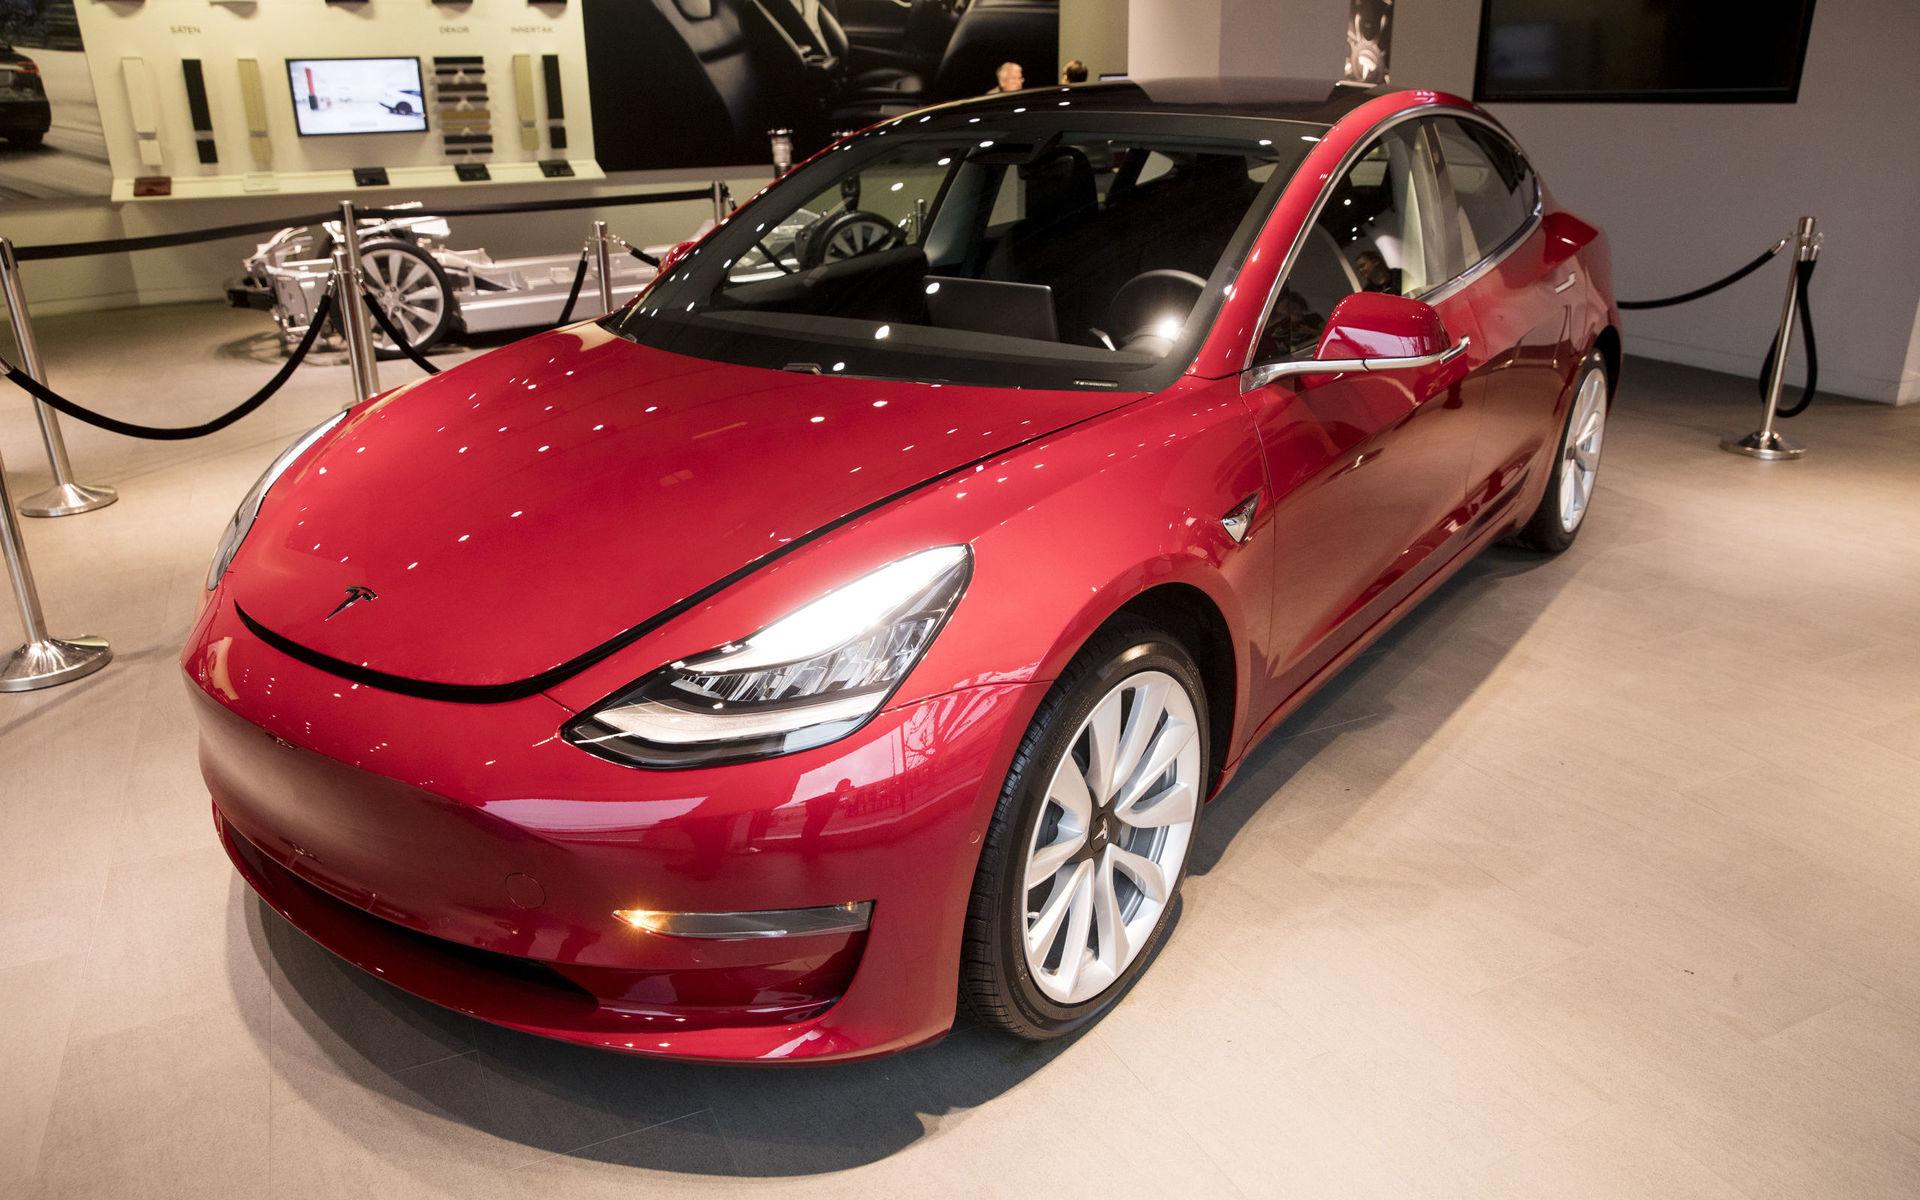 Modell 3 är Teslas fjärde modell efter Roadster, S och X.